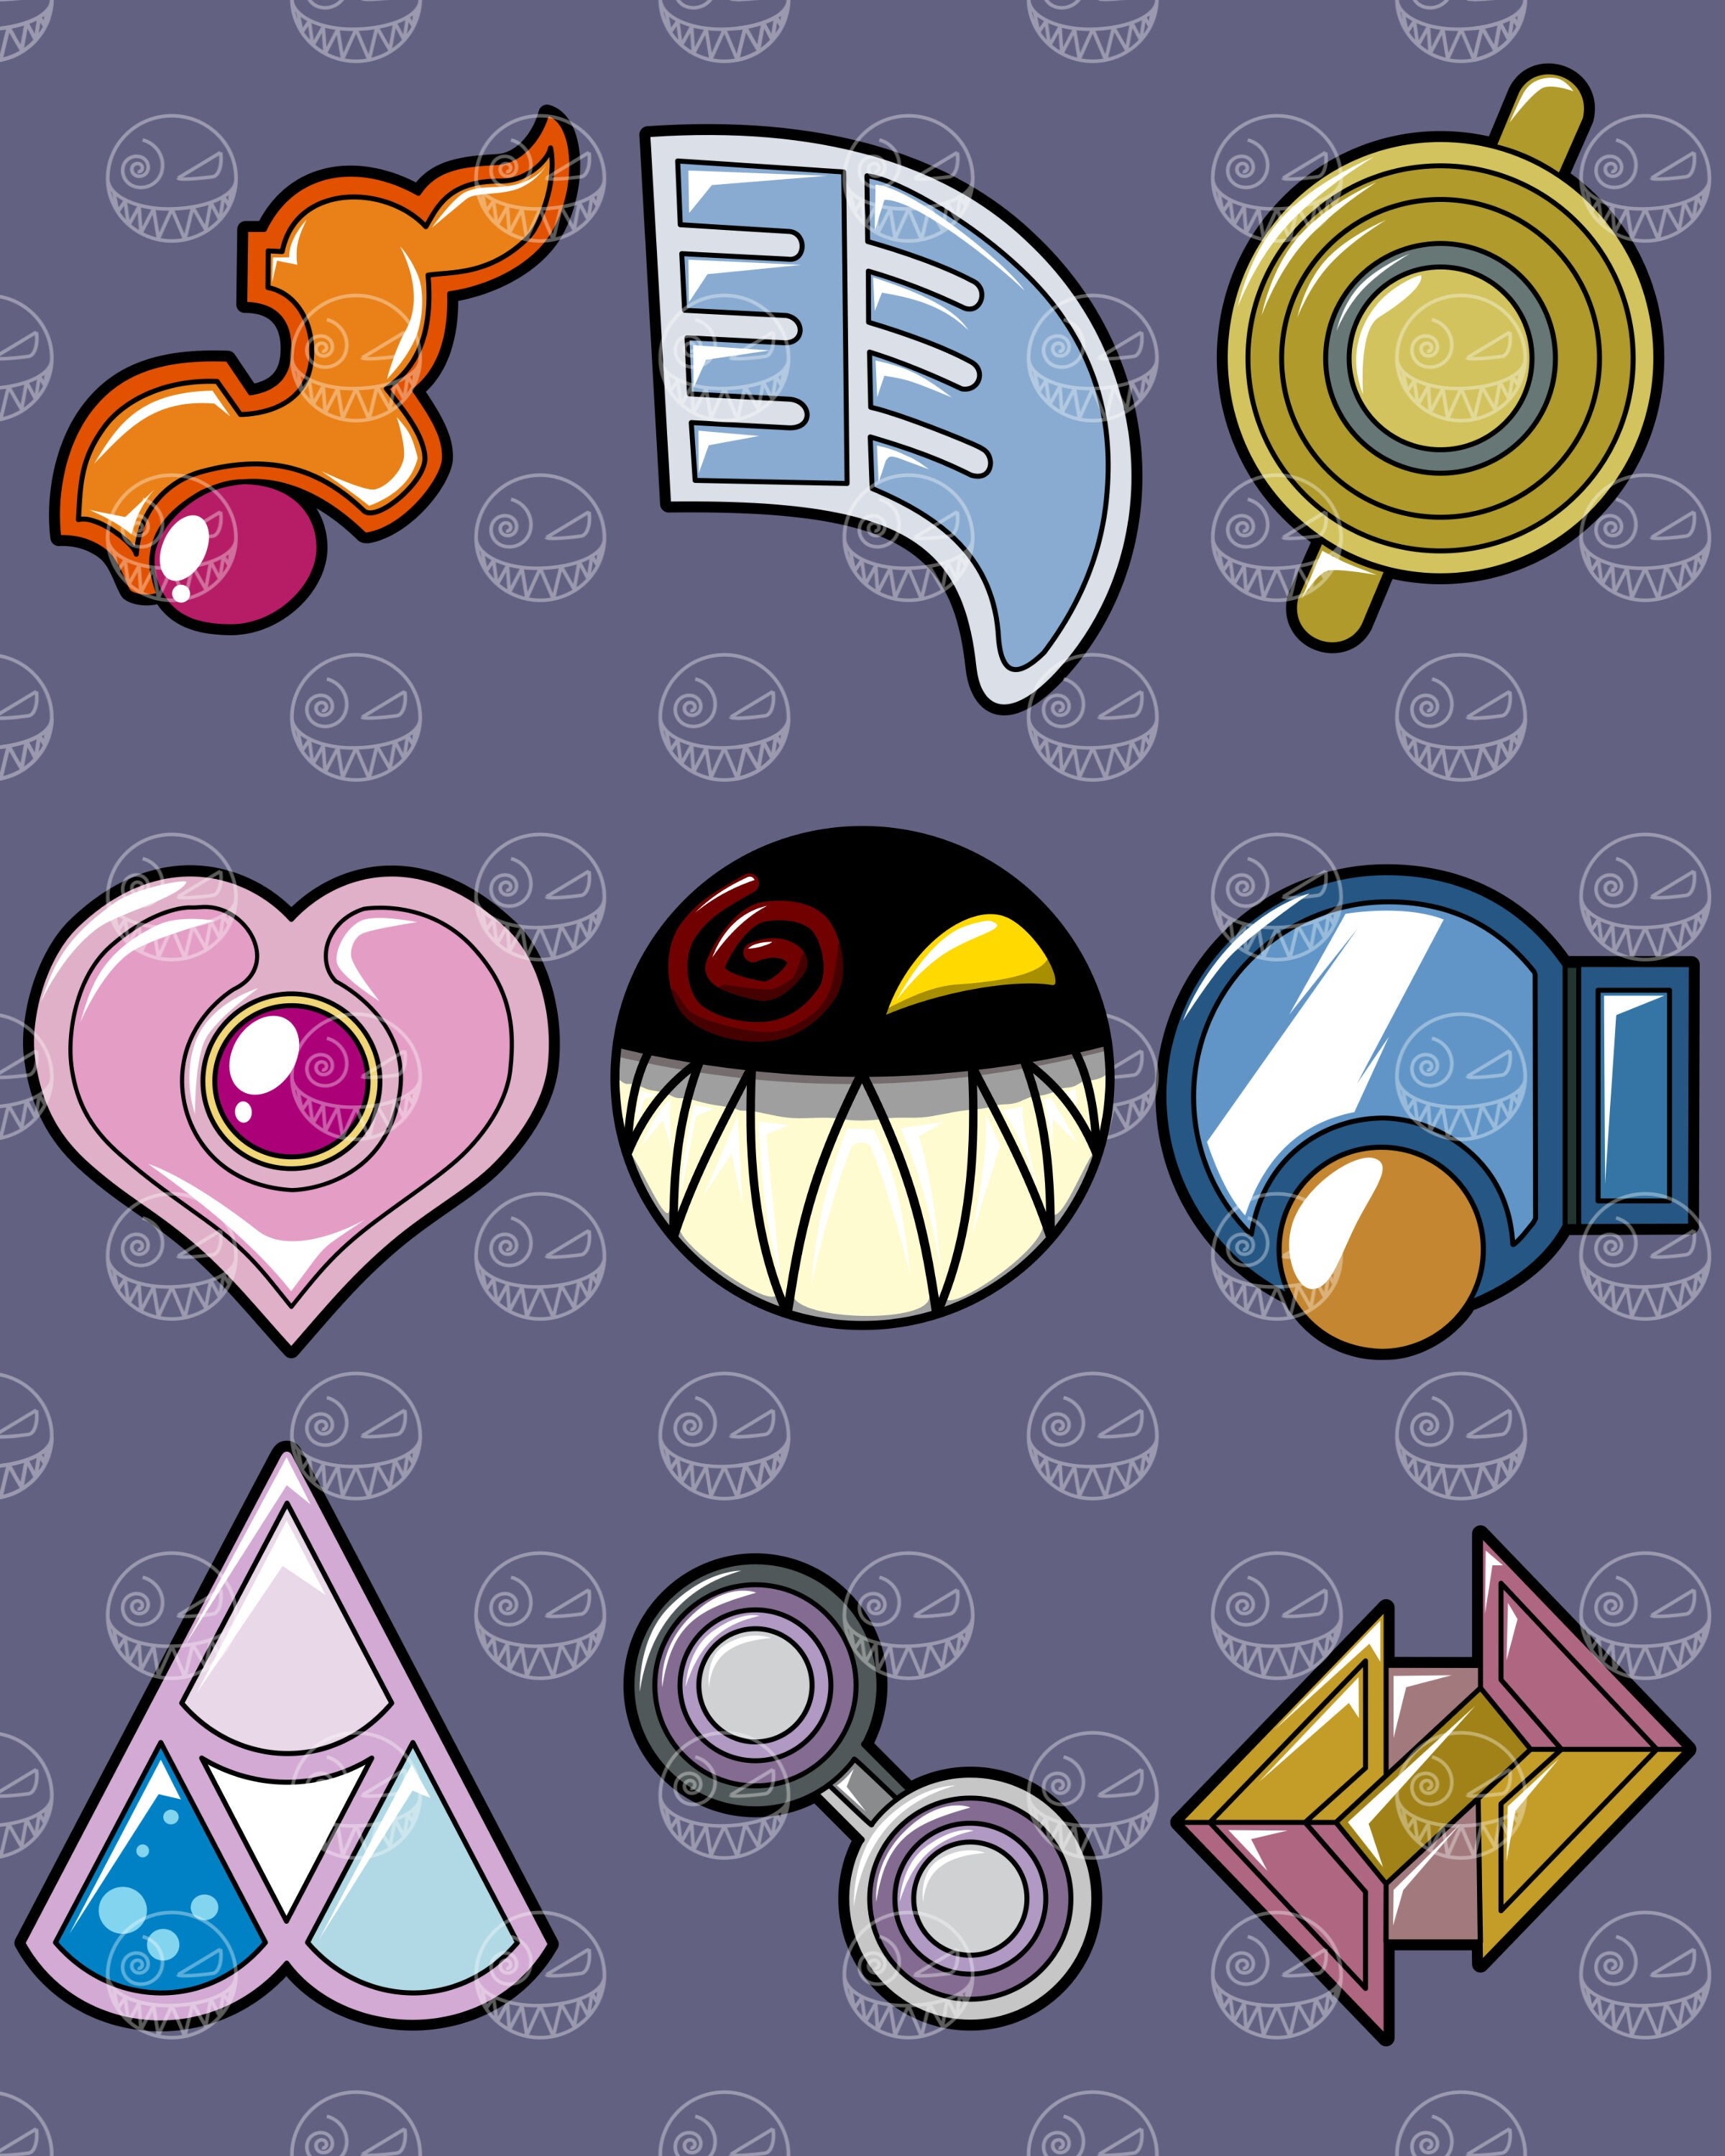 Pokemon Hoenn Badges: Pixel Art Badges Hardcover Journal for Sale by  bearbot